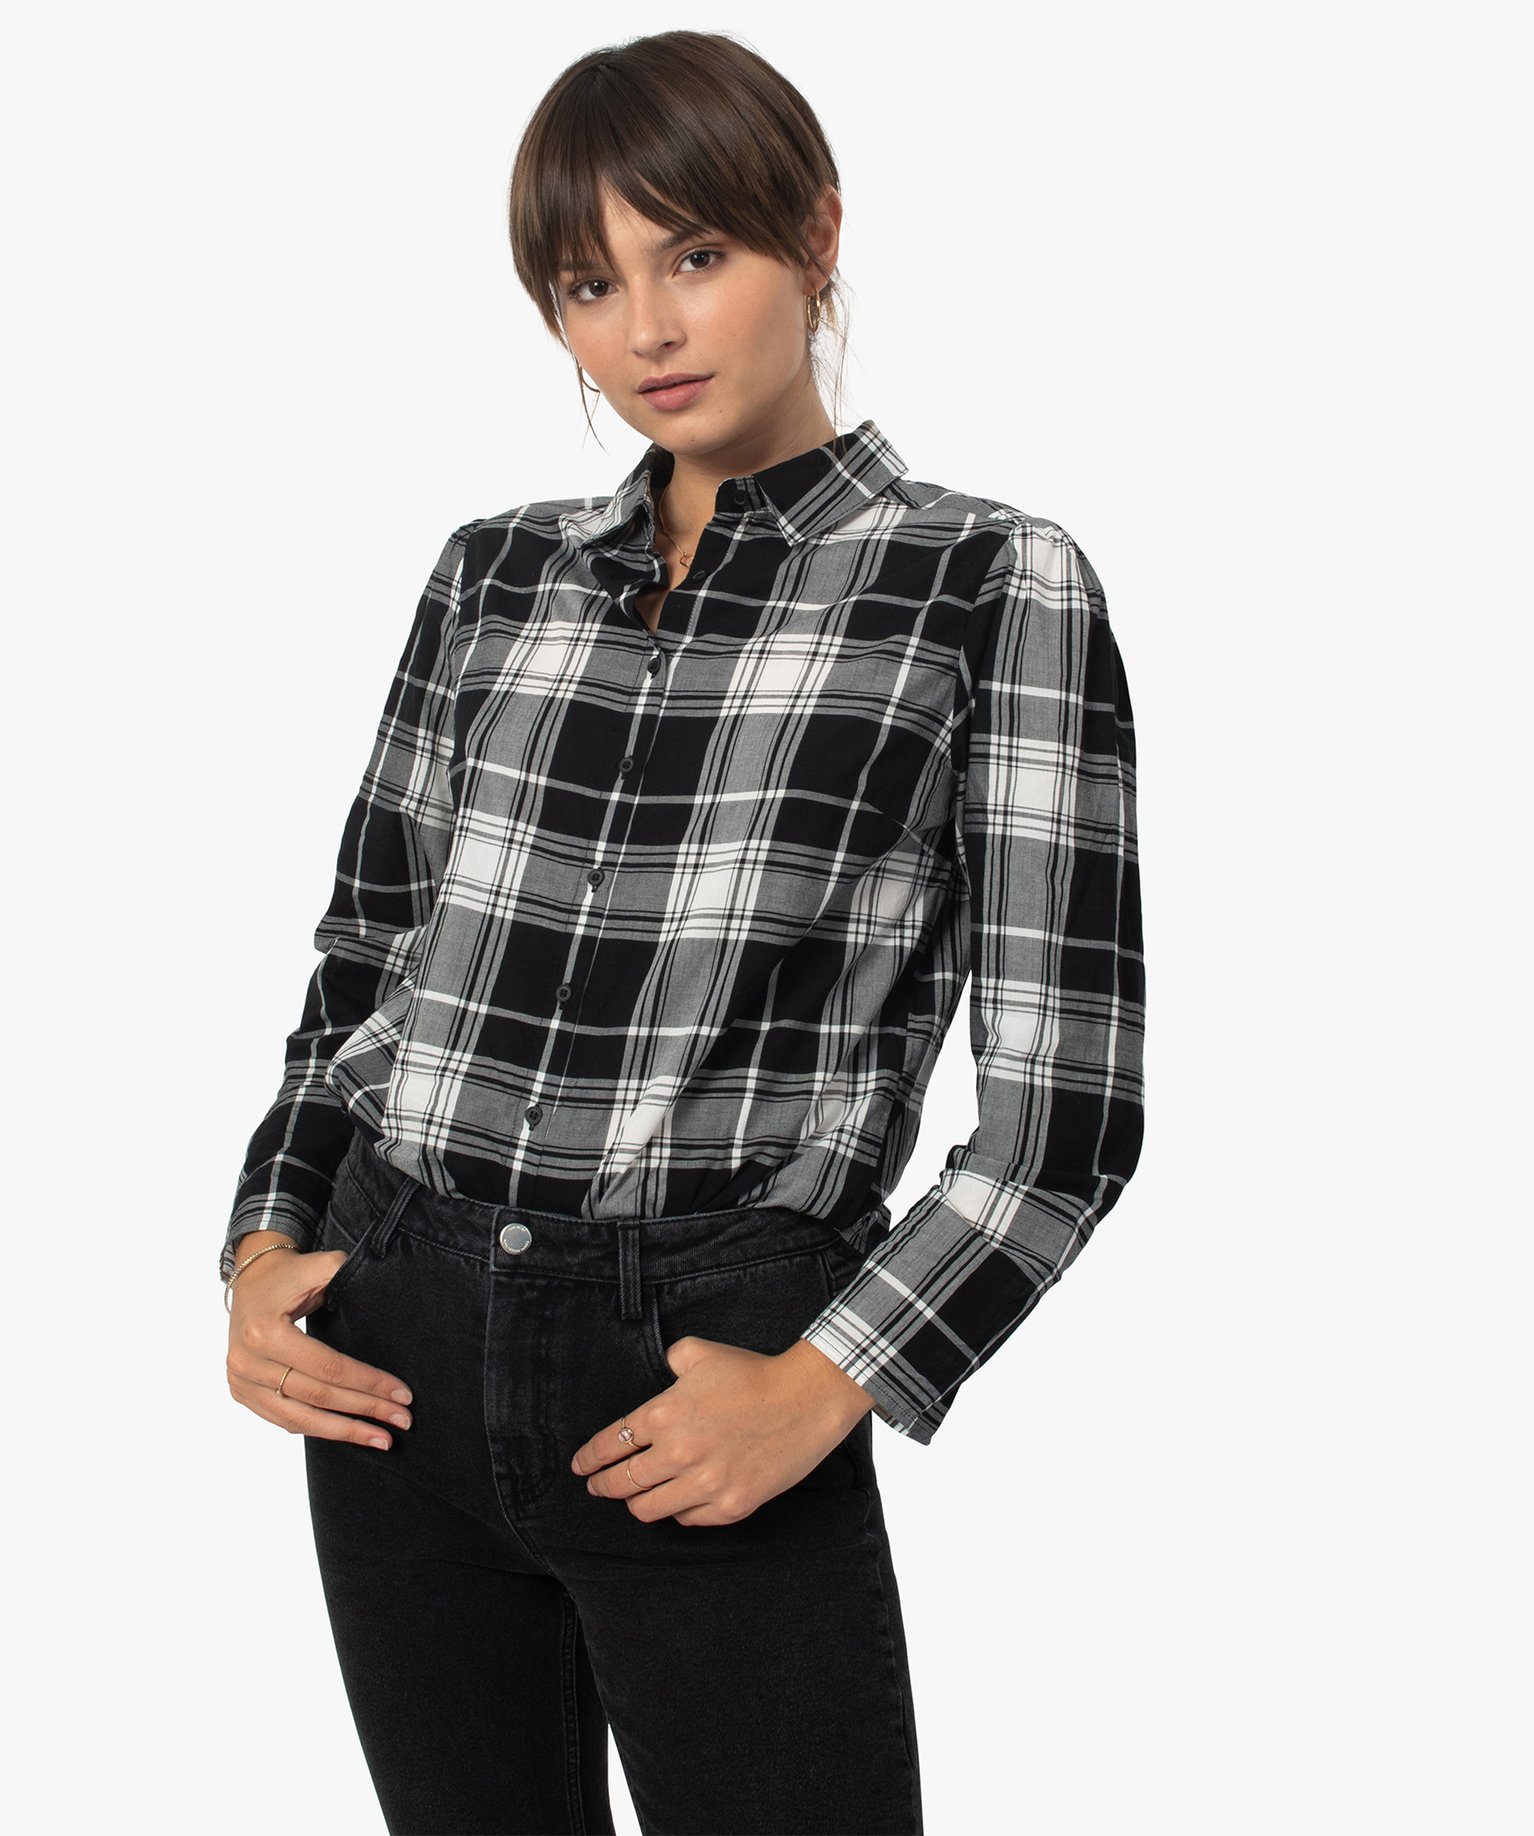 chemise femme a carreaux 100 coton imprime chemisiers